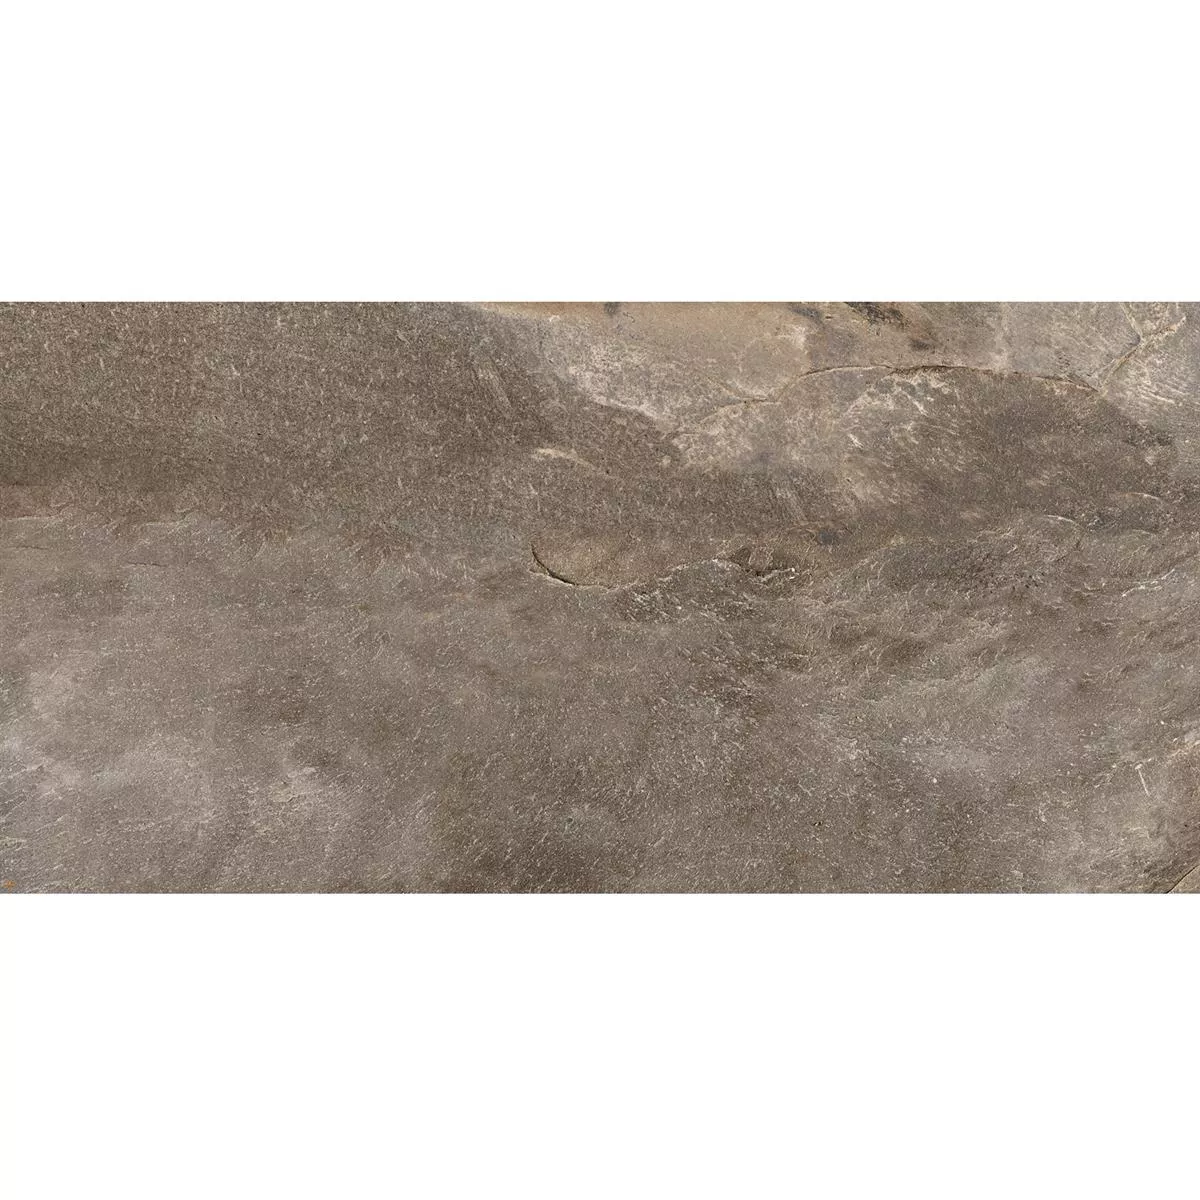 Sample Floor Tiles Homeland Natural Stone Optic R10 Bronze 30x60cm